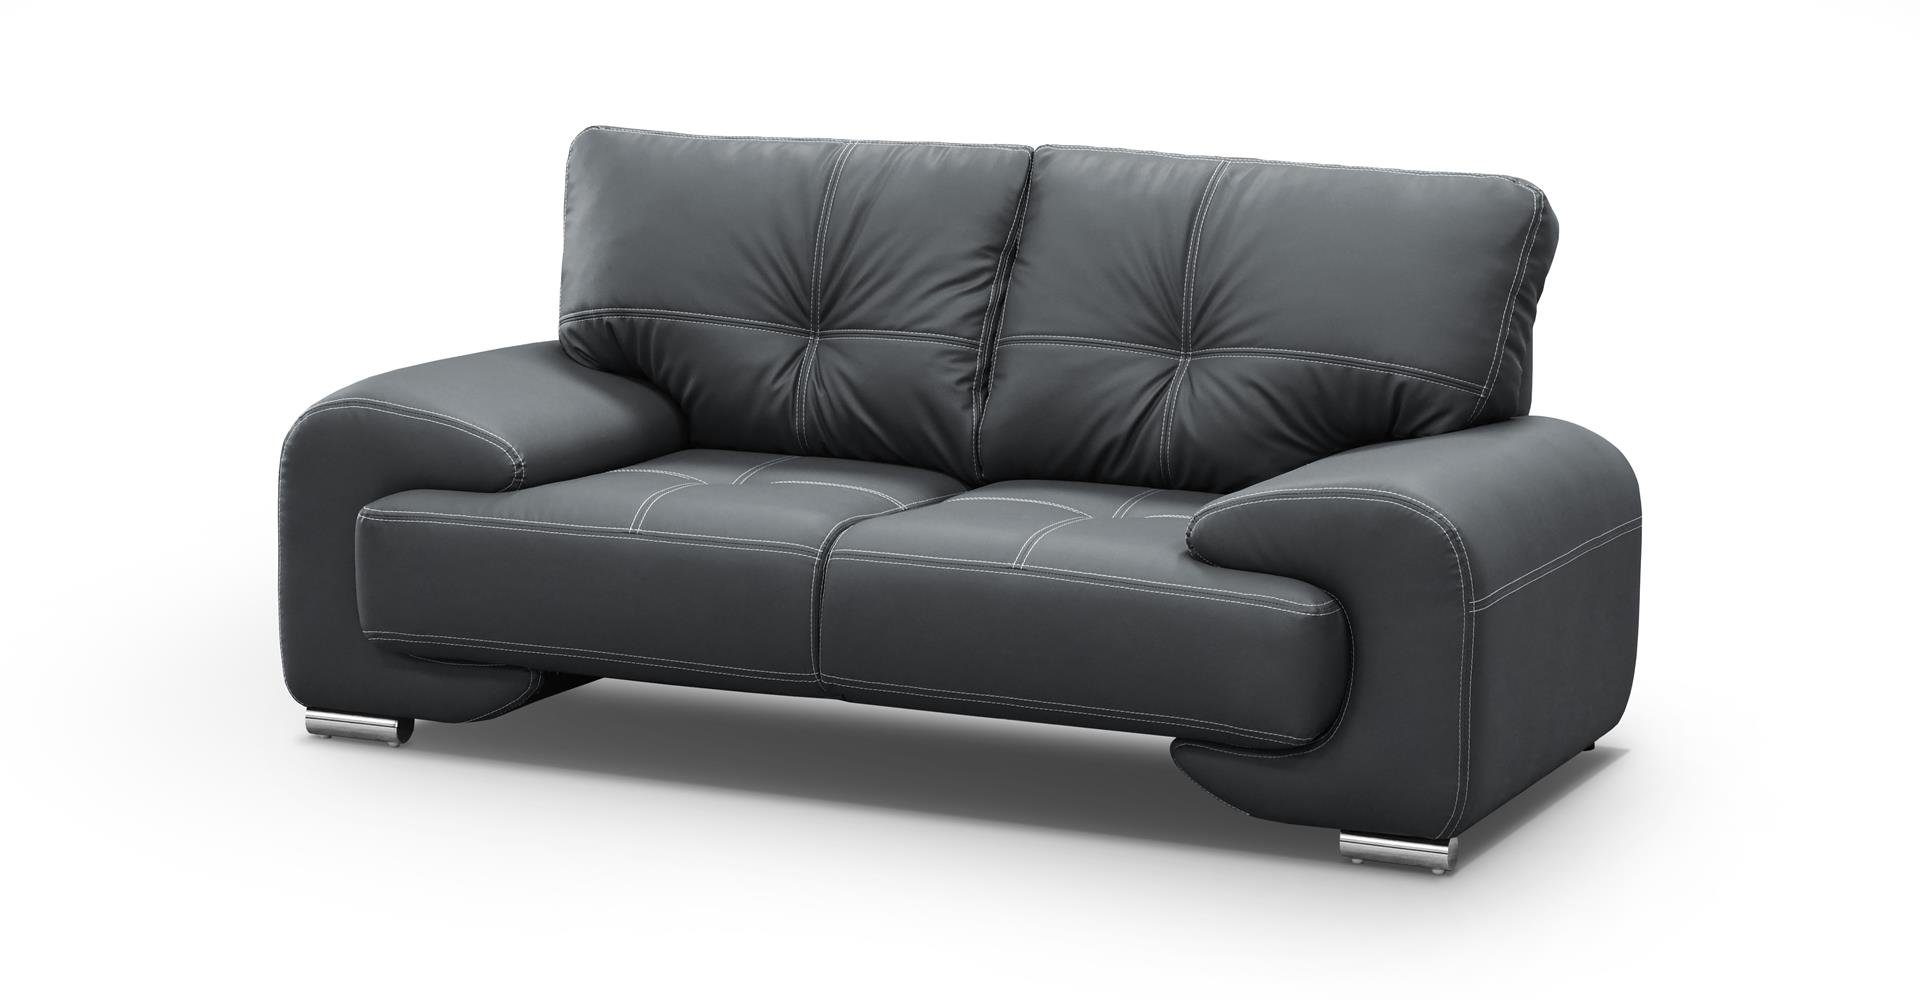 Beautysofa 2-Sitzer Zweisitzer Sofa Couch OMEGA Neu Anthrazit (dolaro 40)